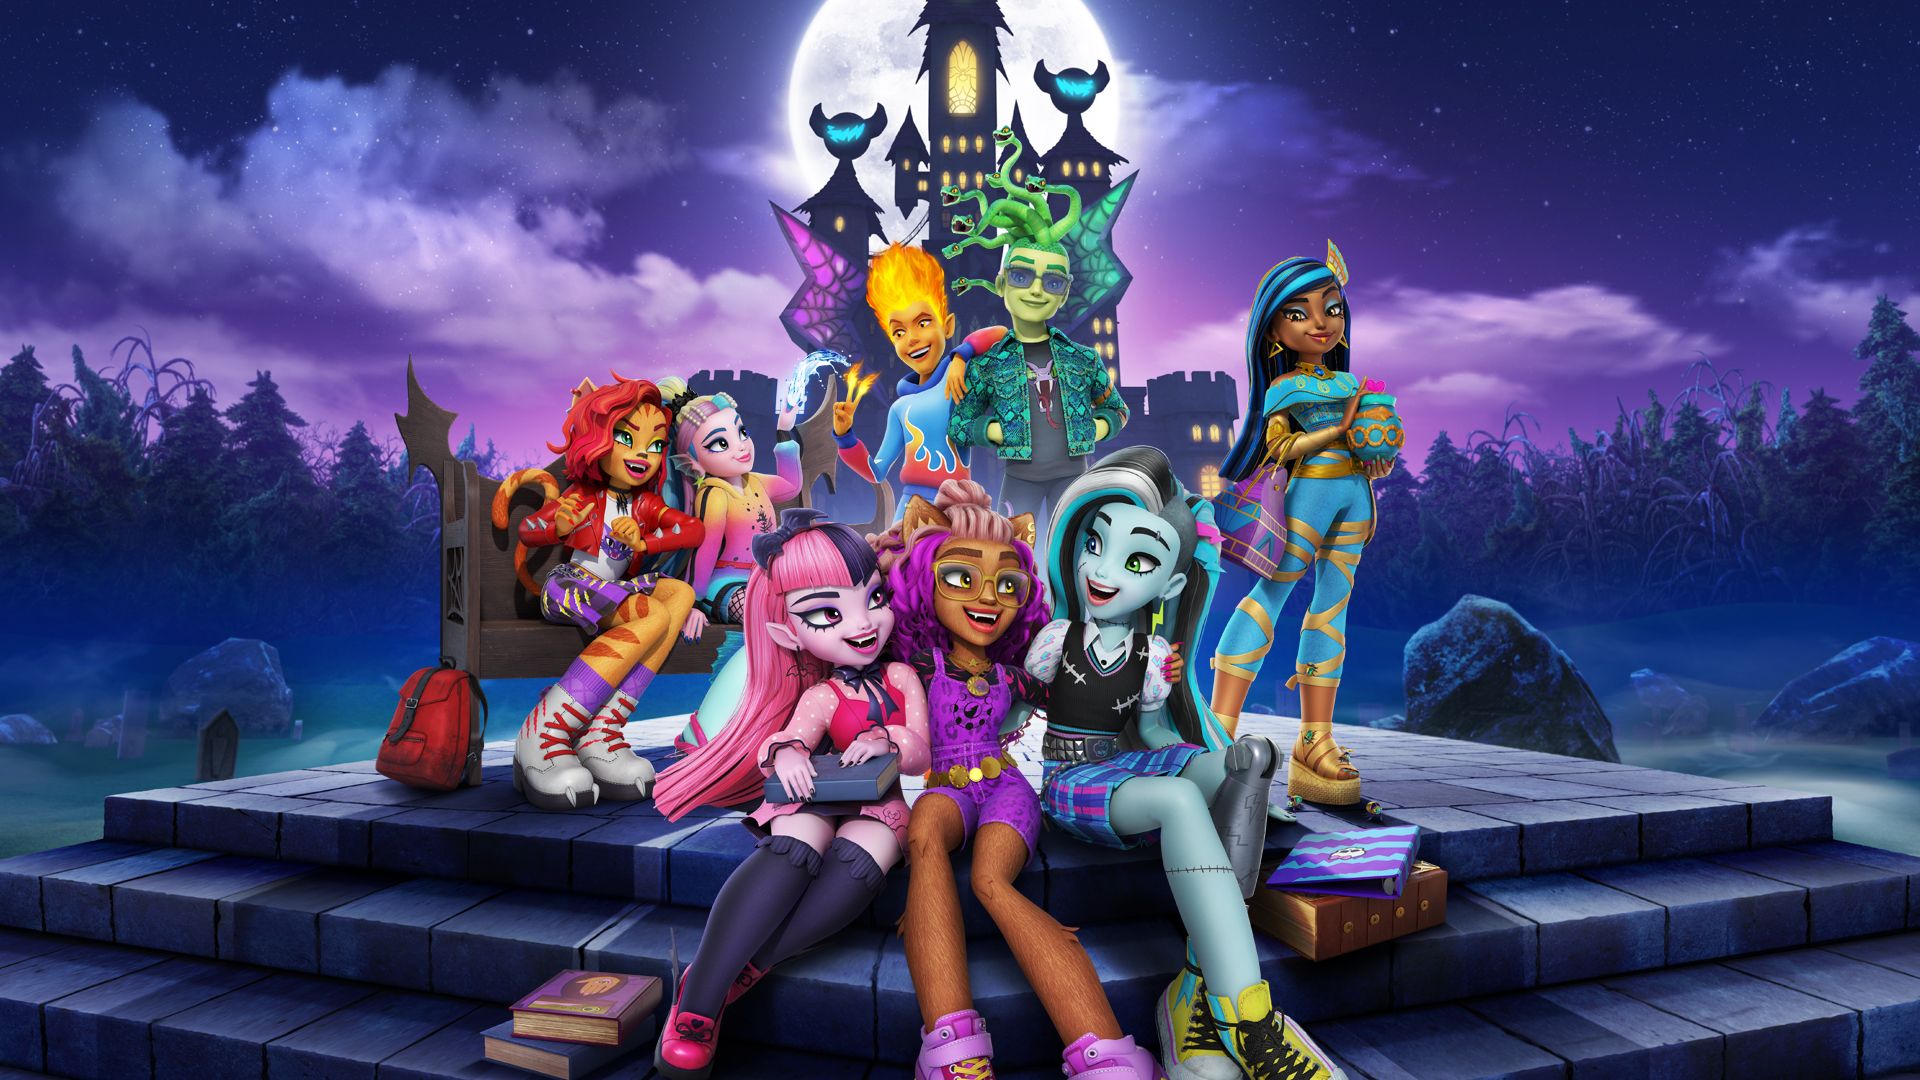 Monster High Frankie Stein Doll, 1 Unit - Baker's